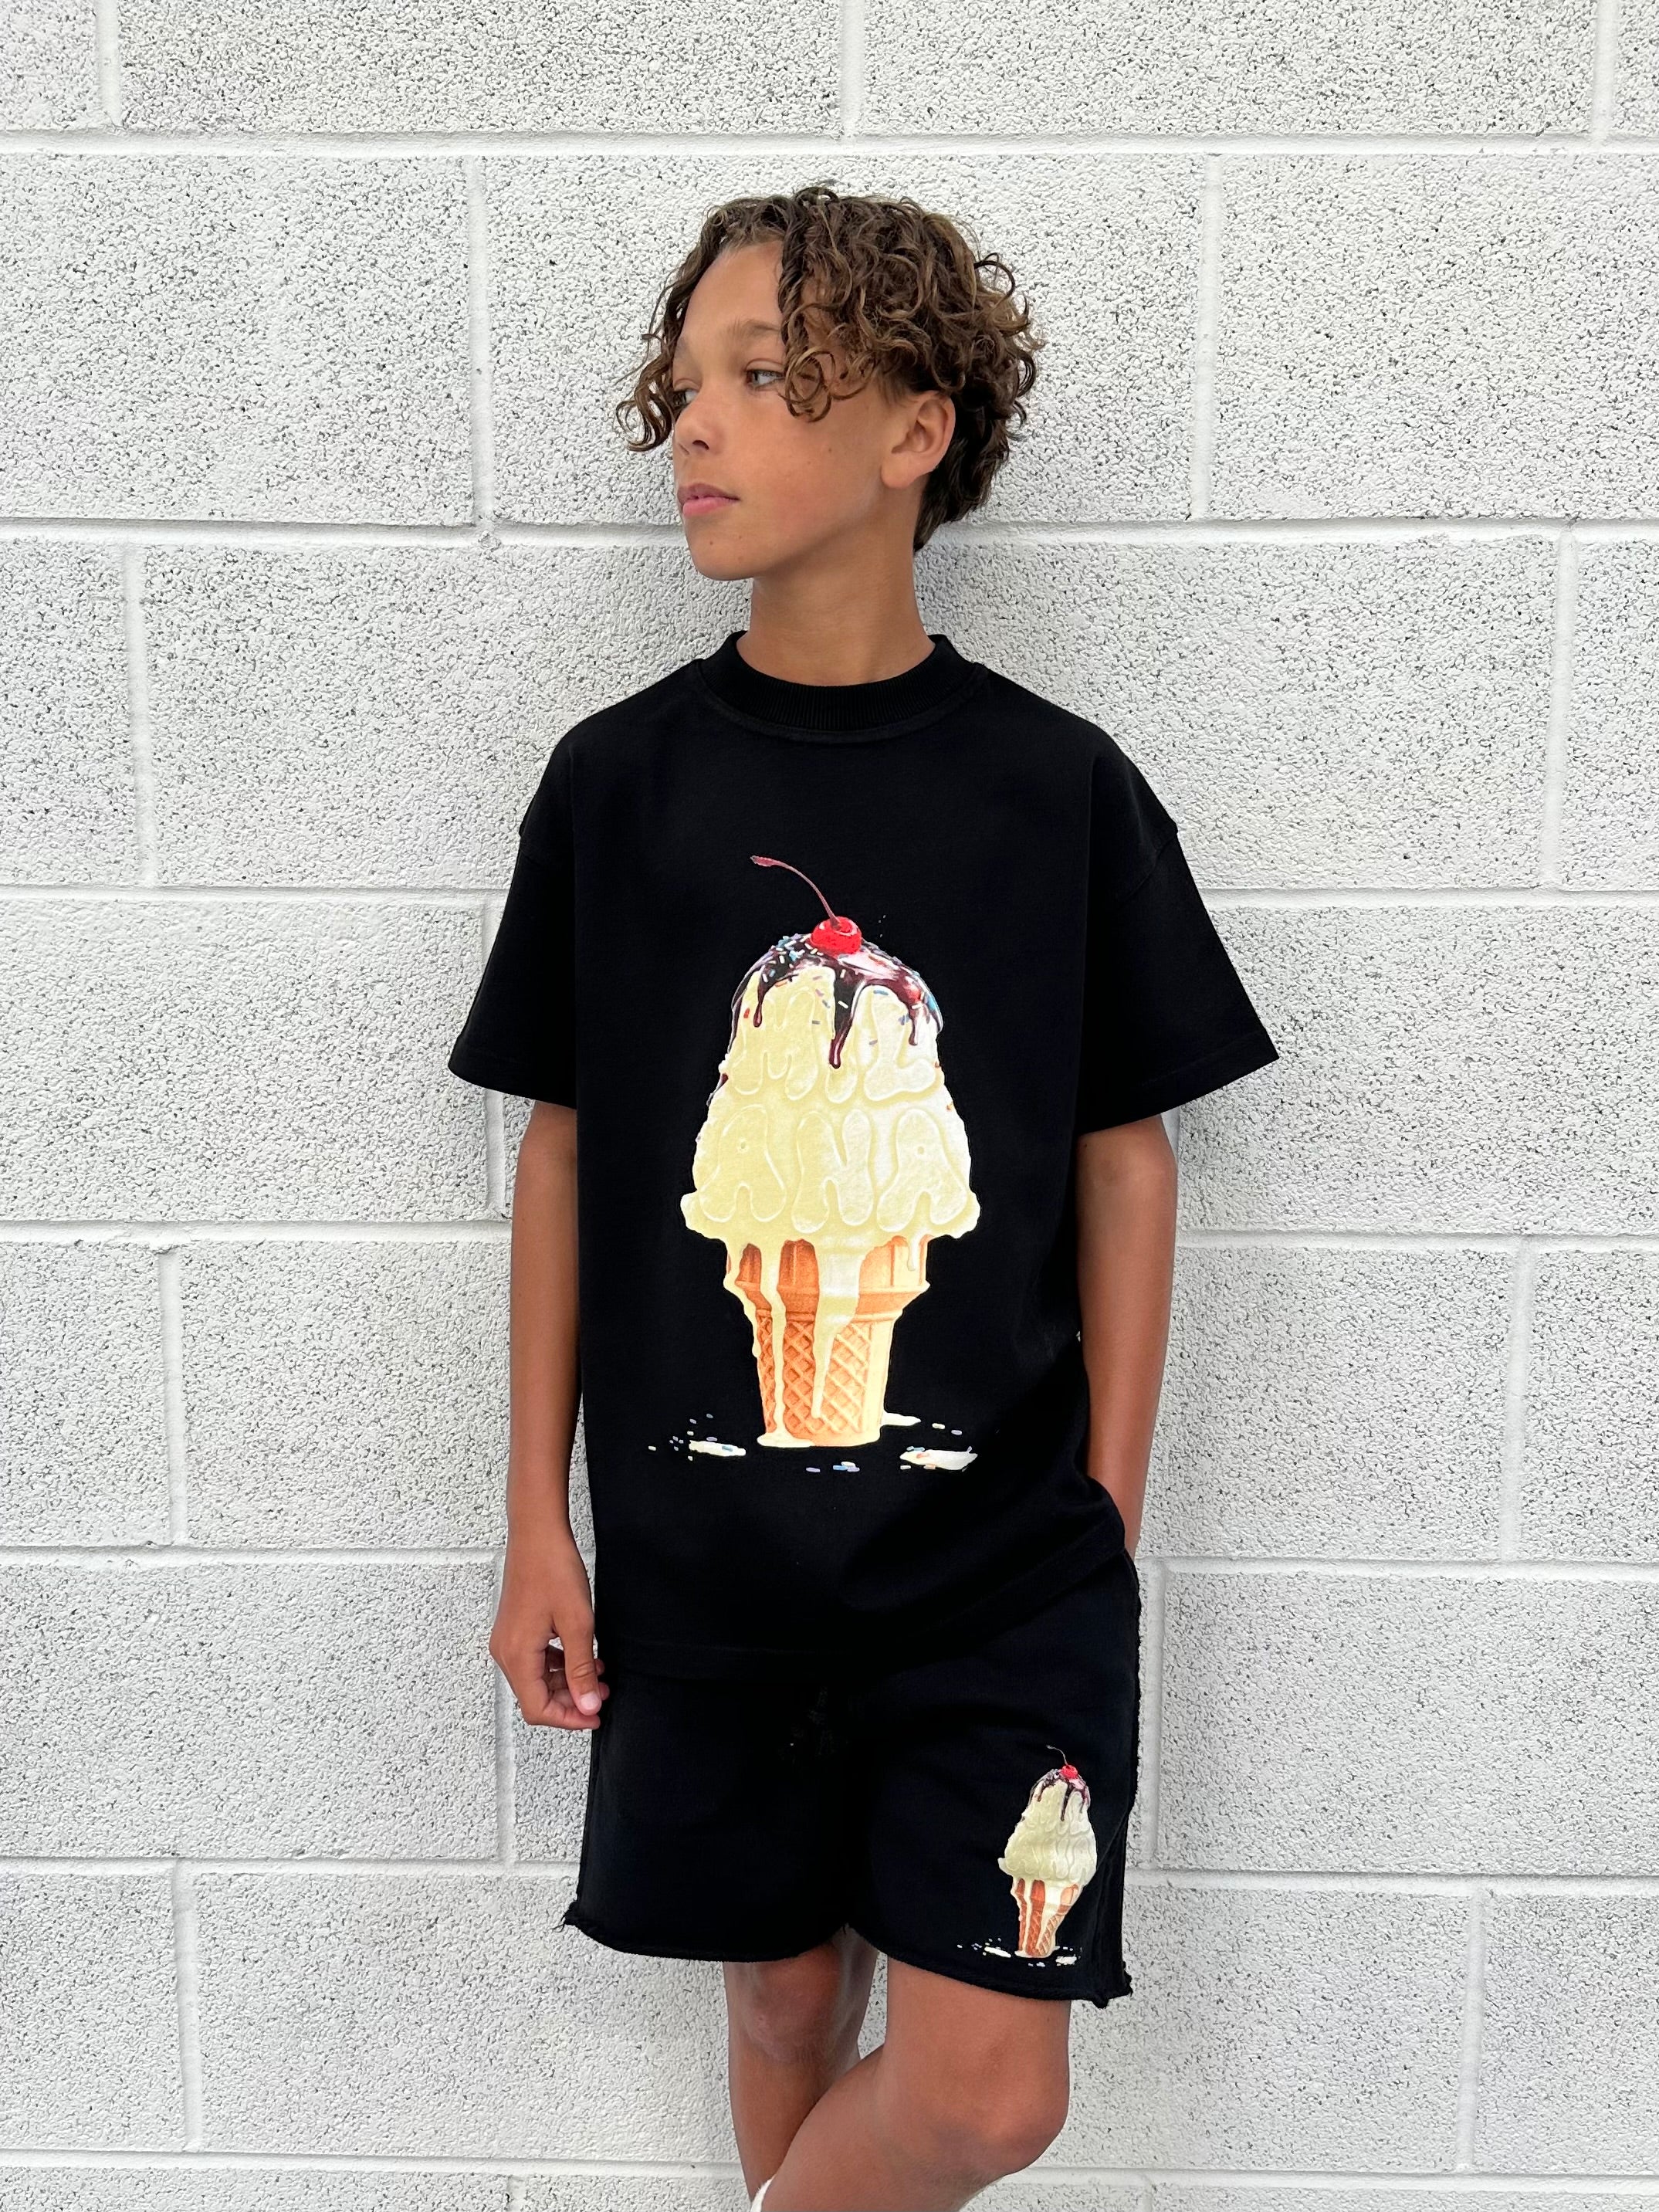 Black Ice Cream Kids T-shirt.